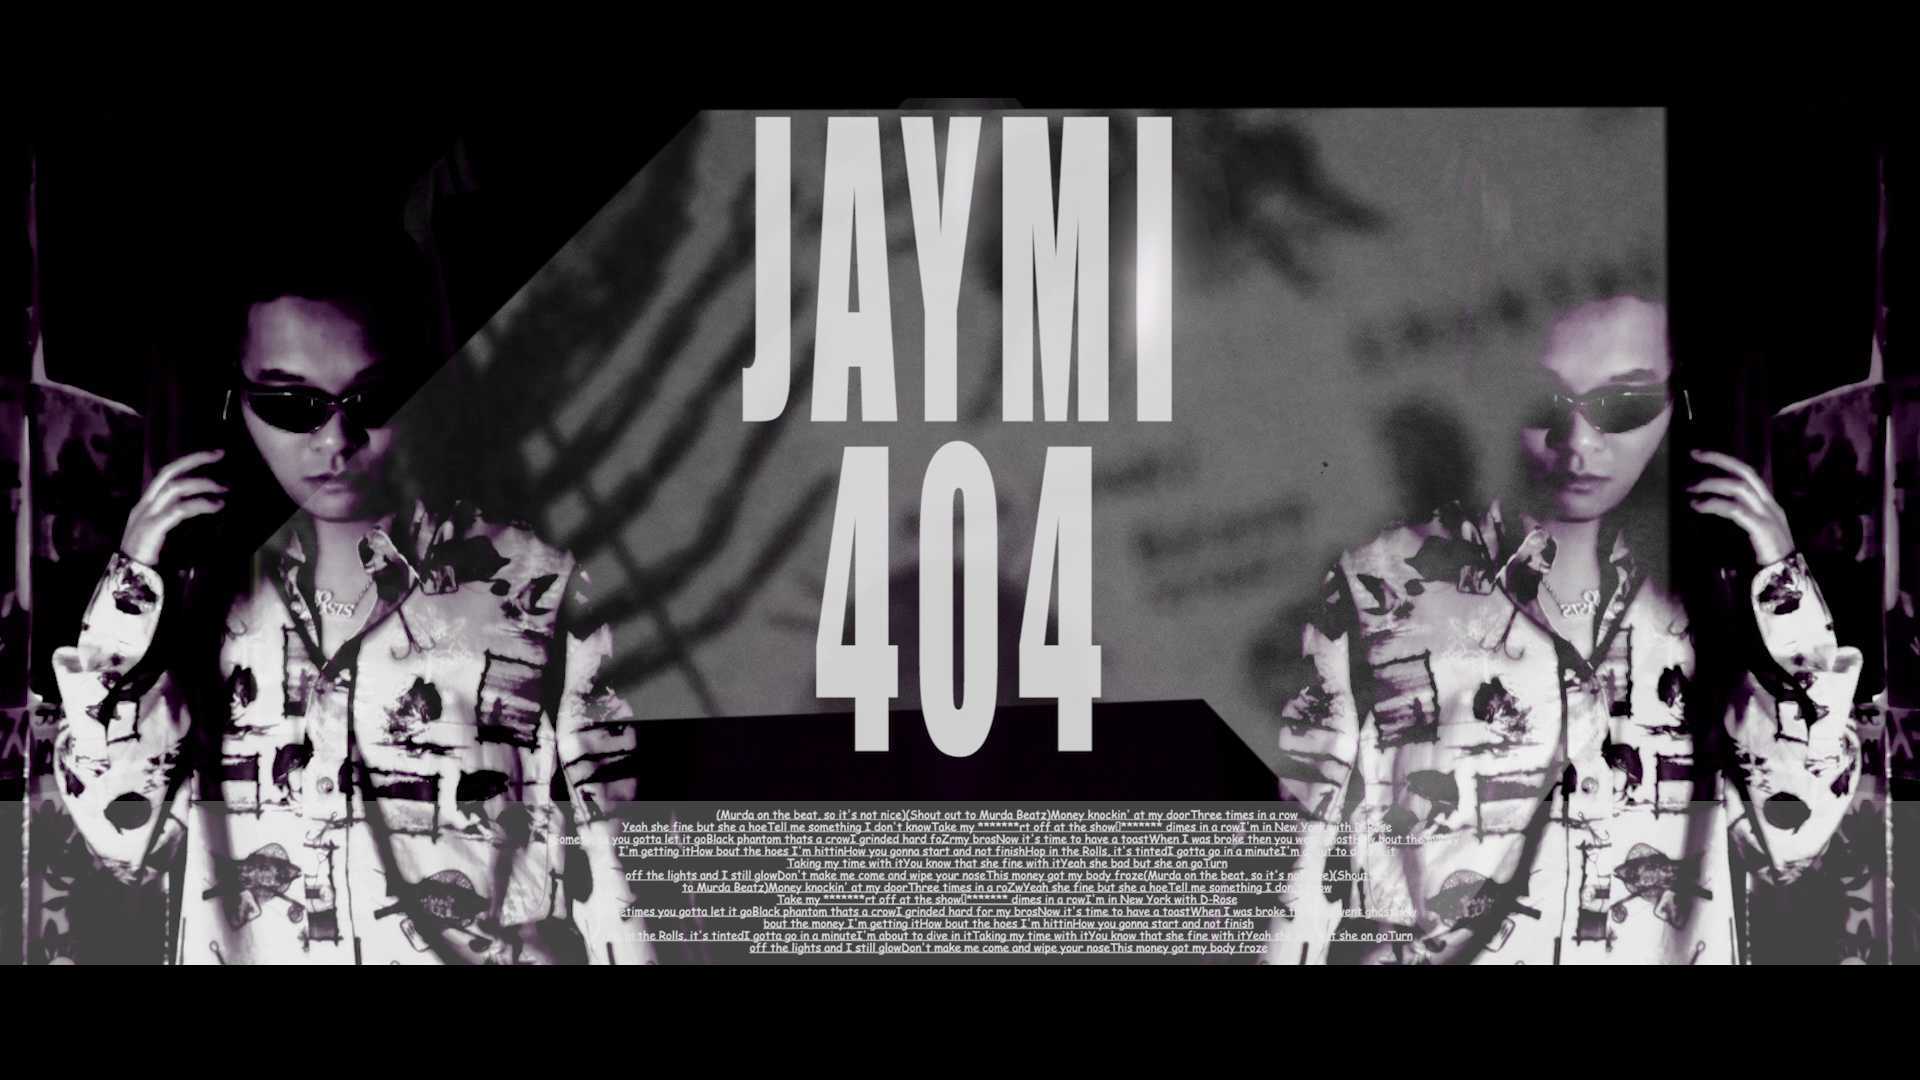 JAYMI404 HIPHOP MV